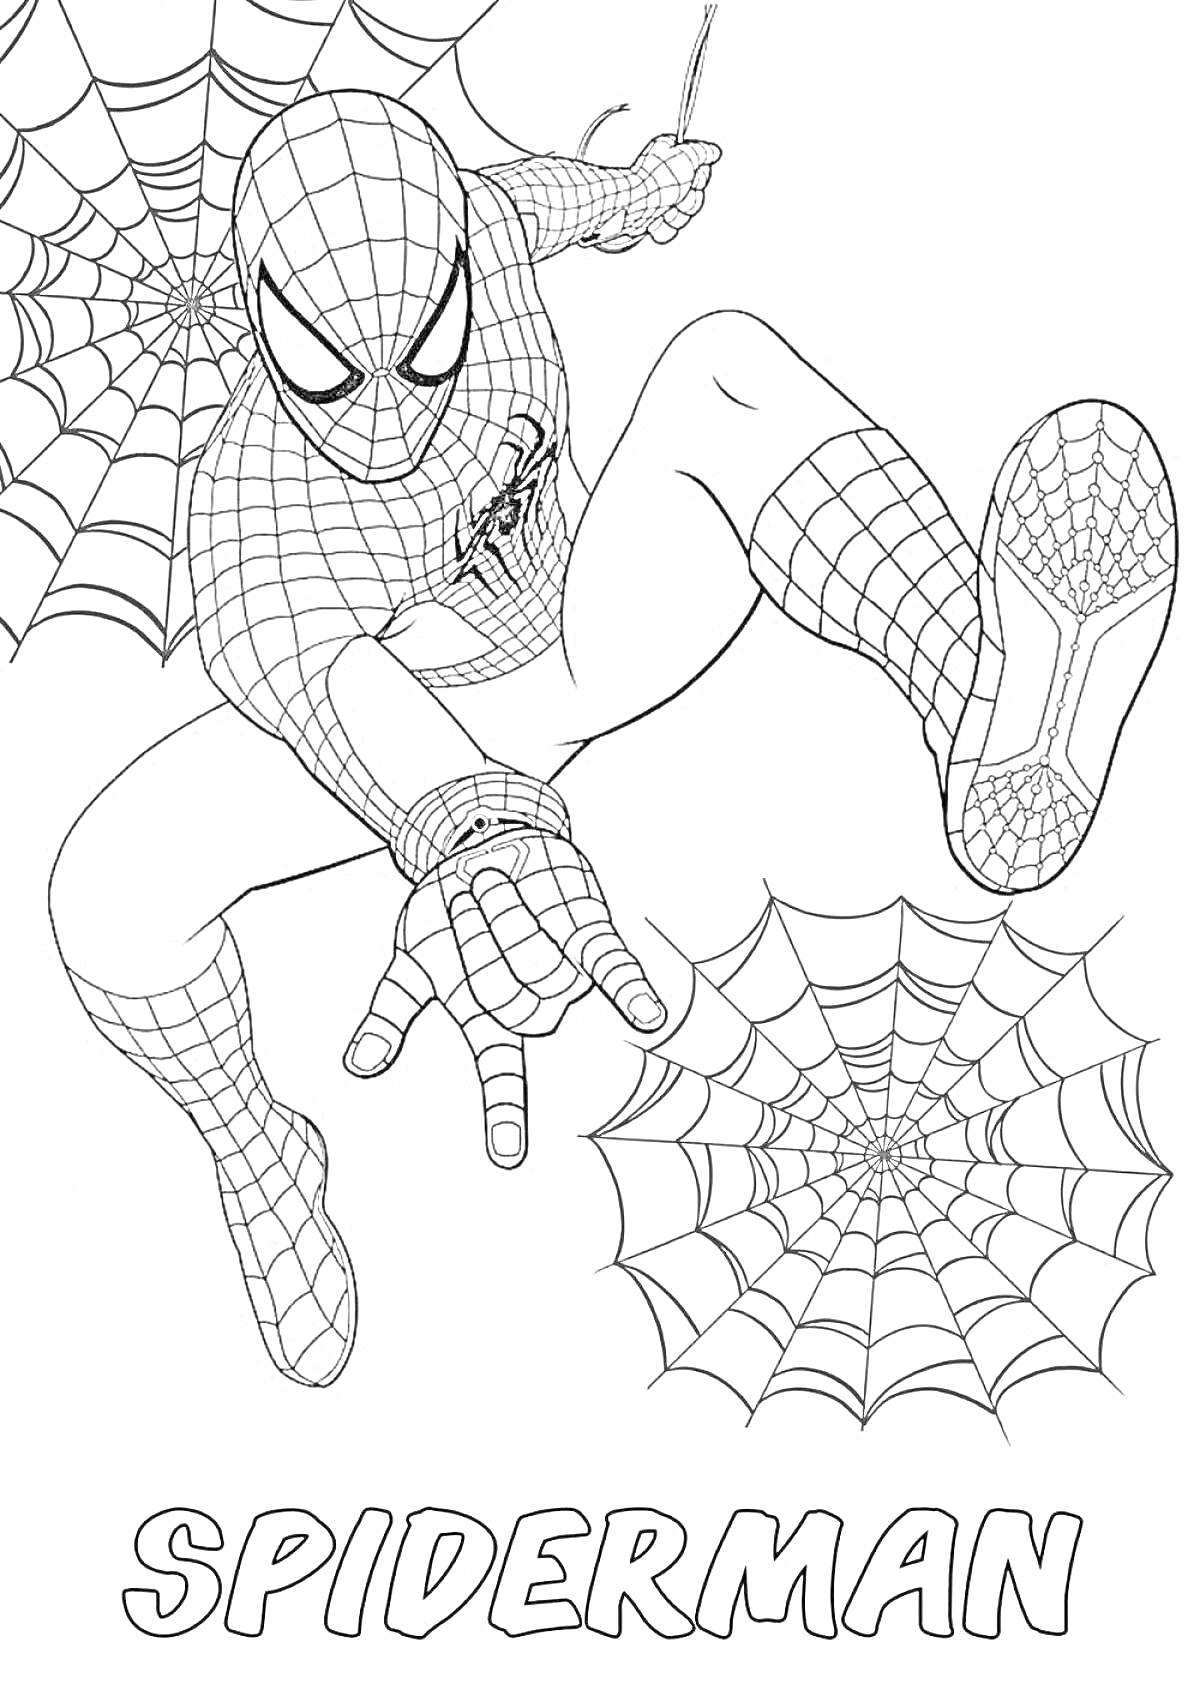 Раскраска Человек-паук на паутине, в прыжке, фон не раскрашен, текст 